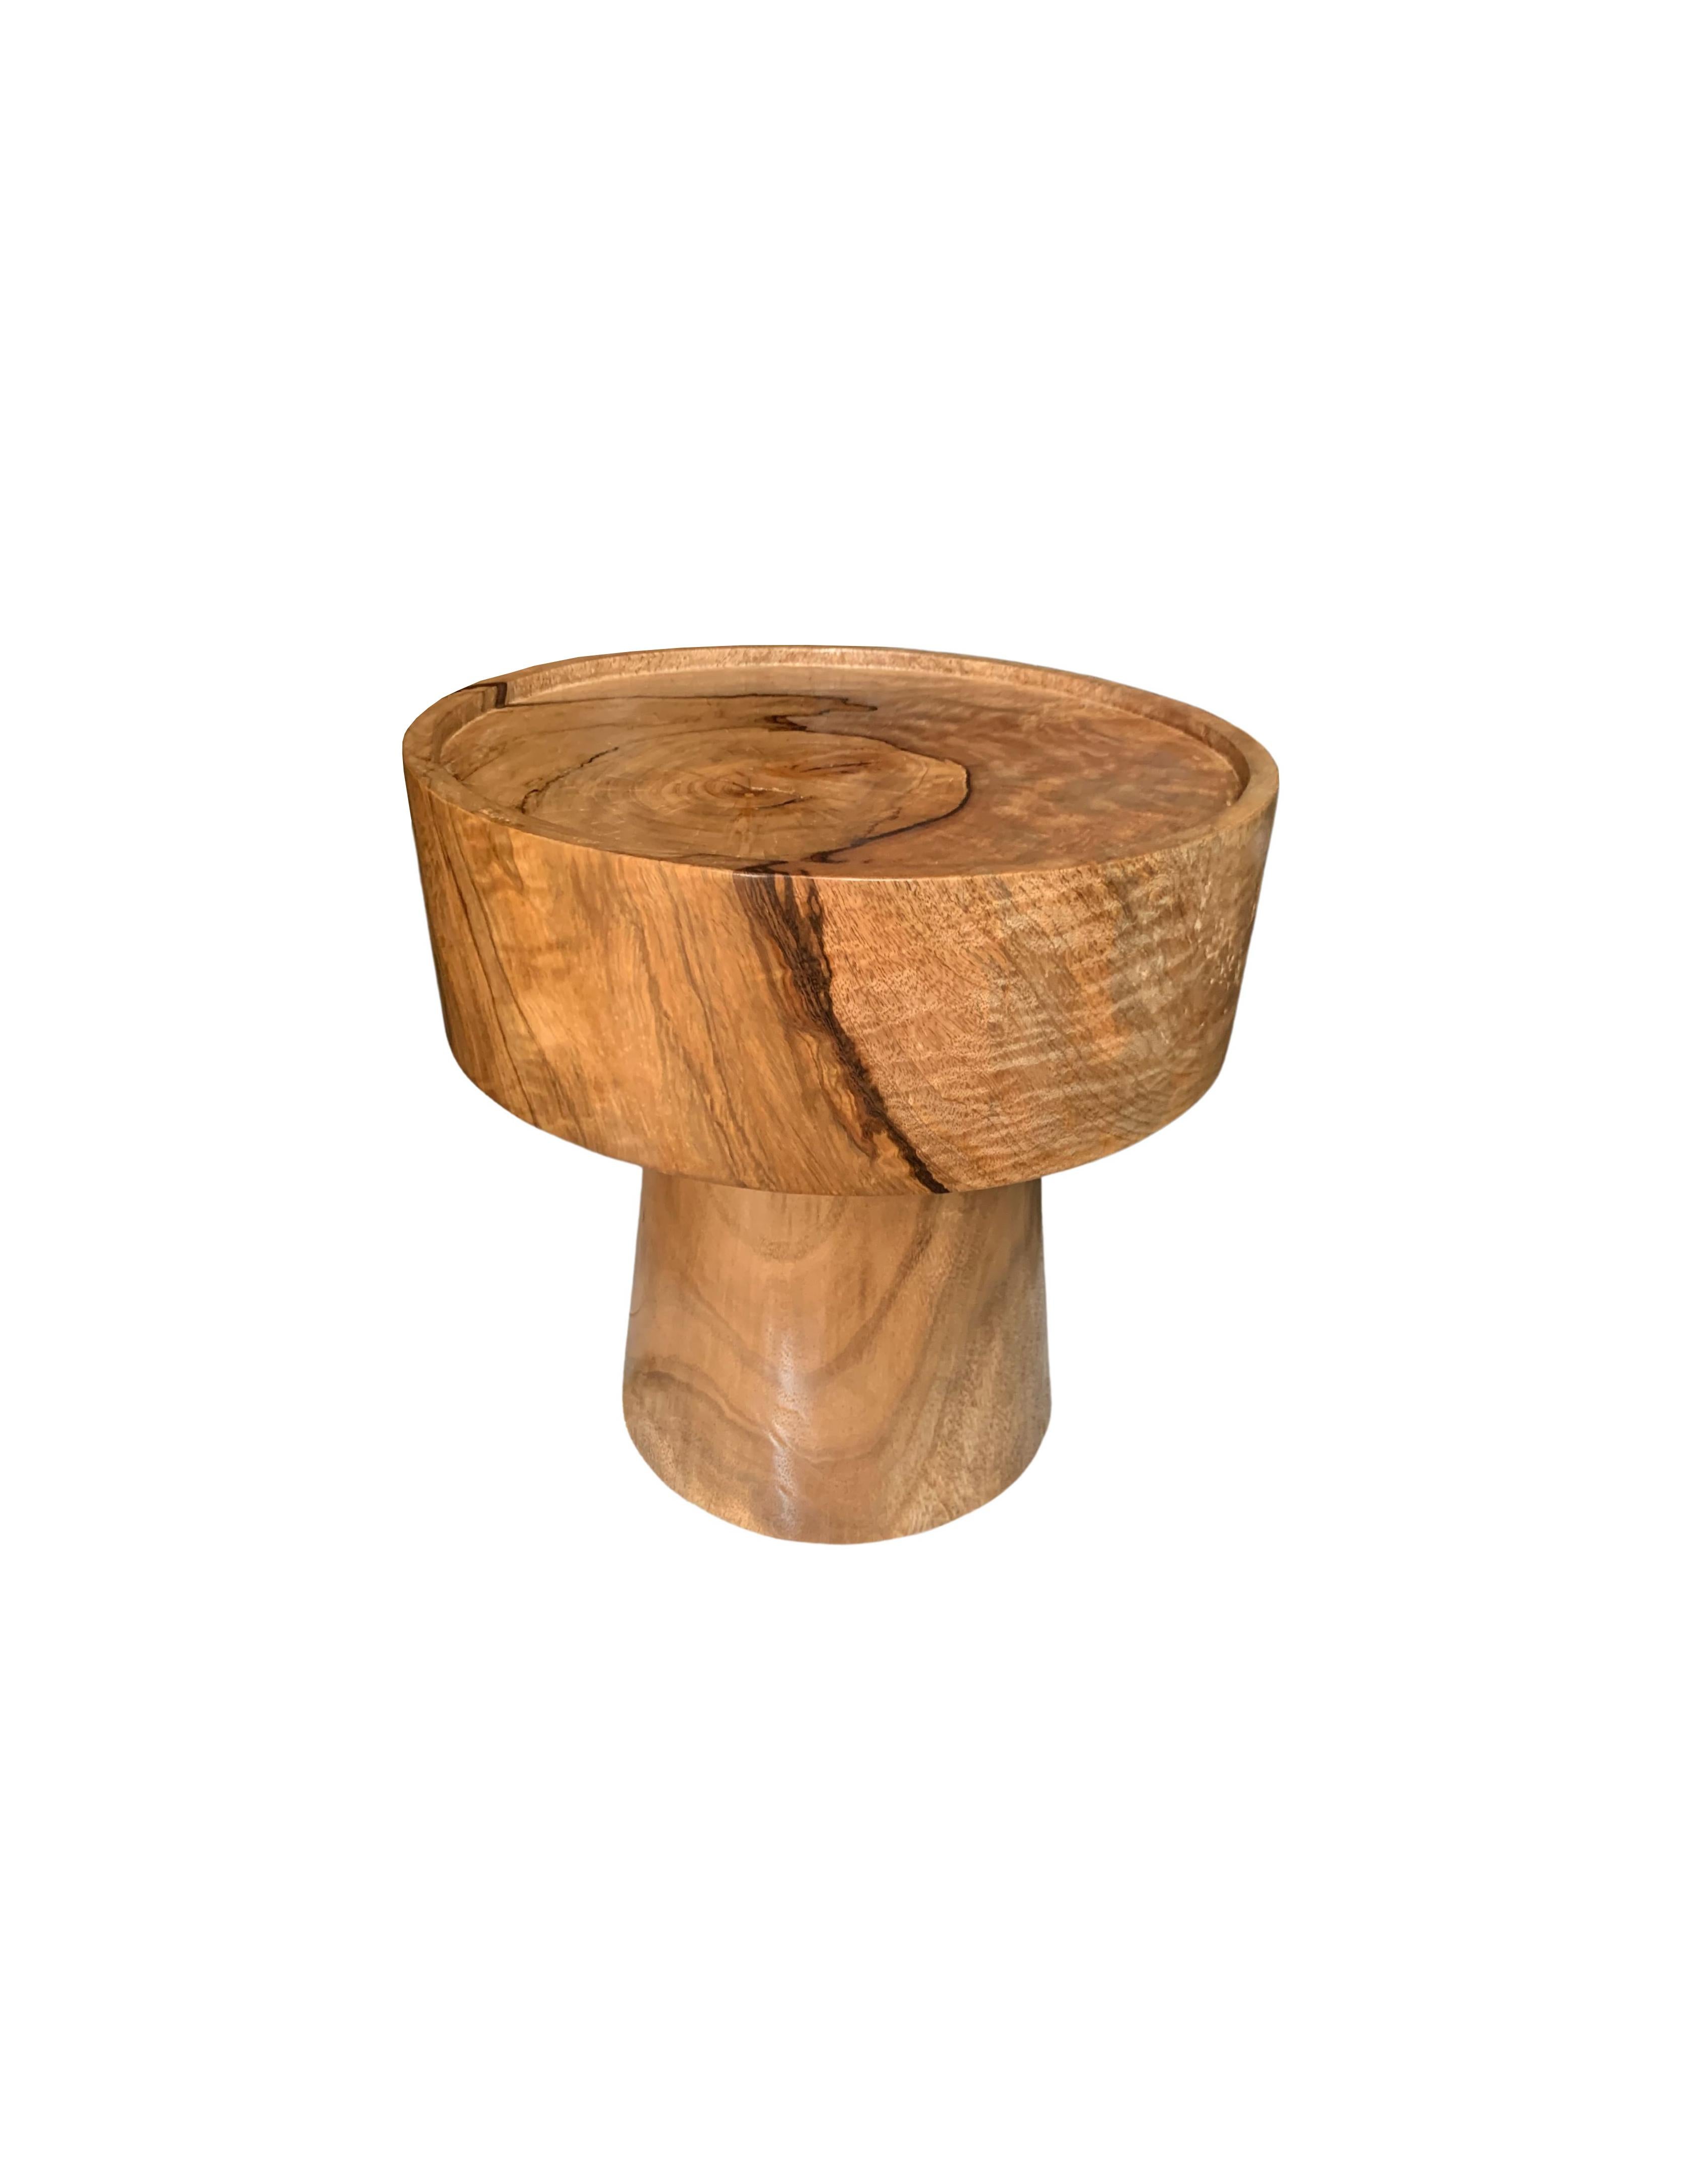 Une table d'appoint ronde merveilleusement sculpturale, avec une finition naturelle. Son pigment neutre et sa subtile texture de bois en font un produit parfait pour tout espace. Une pièce unique, sculpturale et polyvalente, qui ne manquera pas de